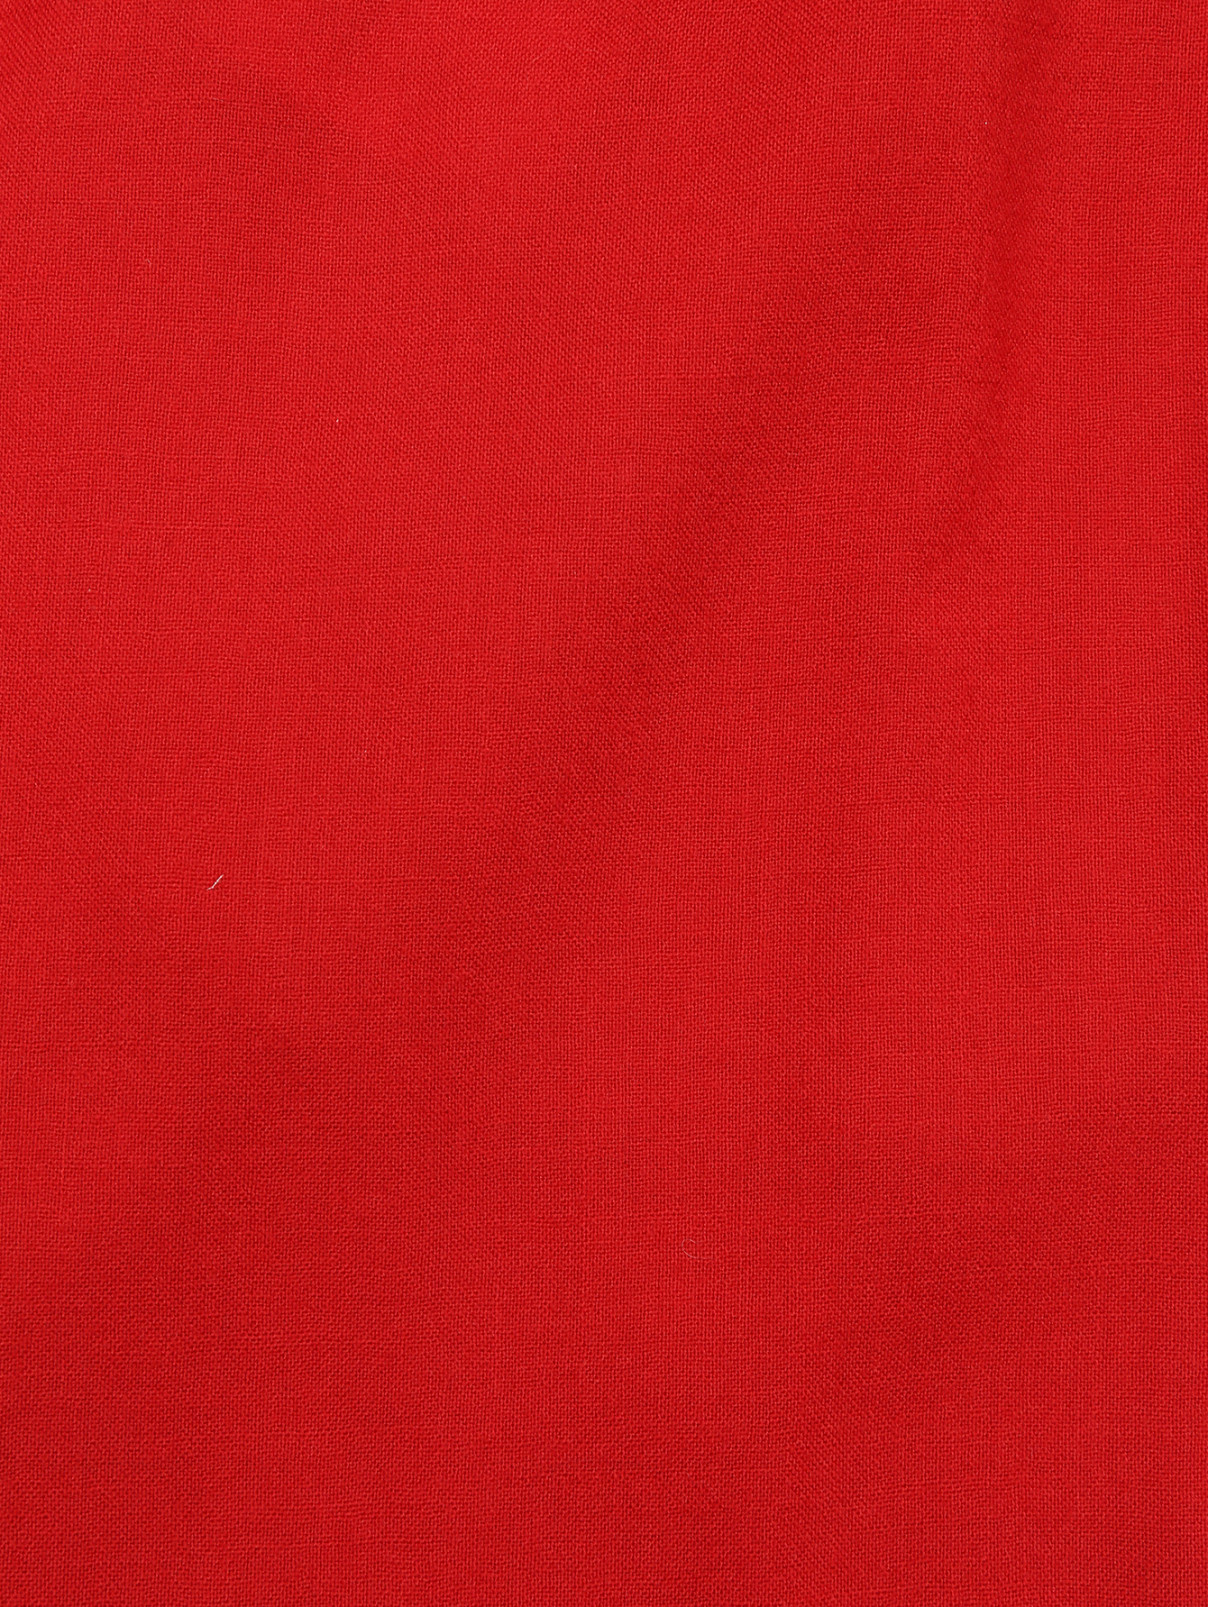 Широкие брюки из шерсти на резинке Aspesi  –  Деталь1  – Цвет:  Красный